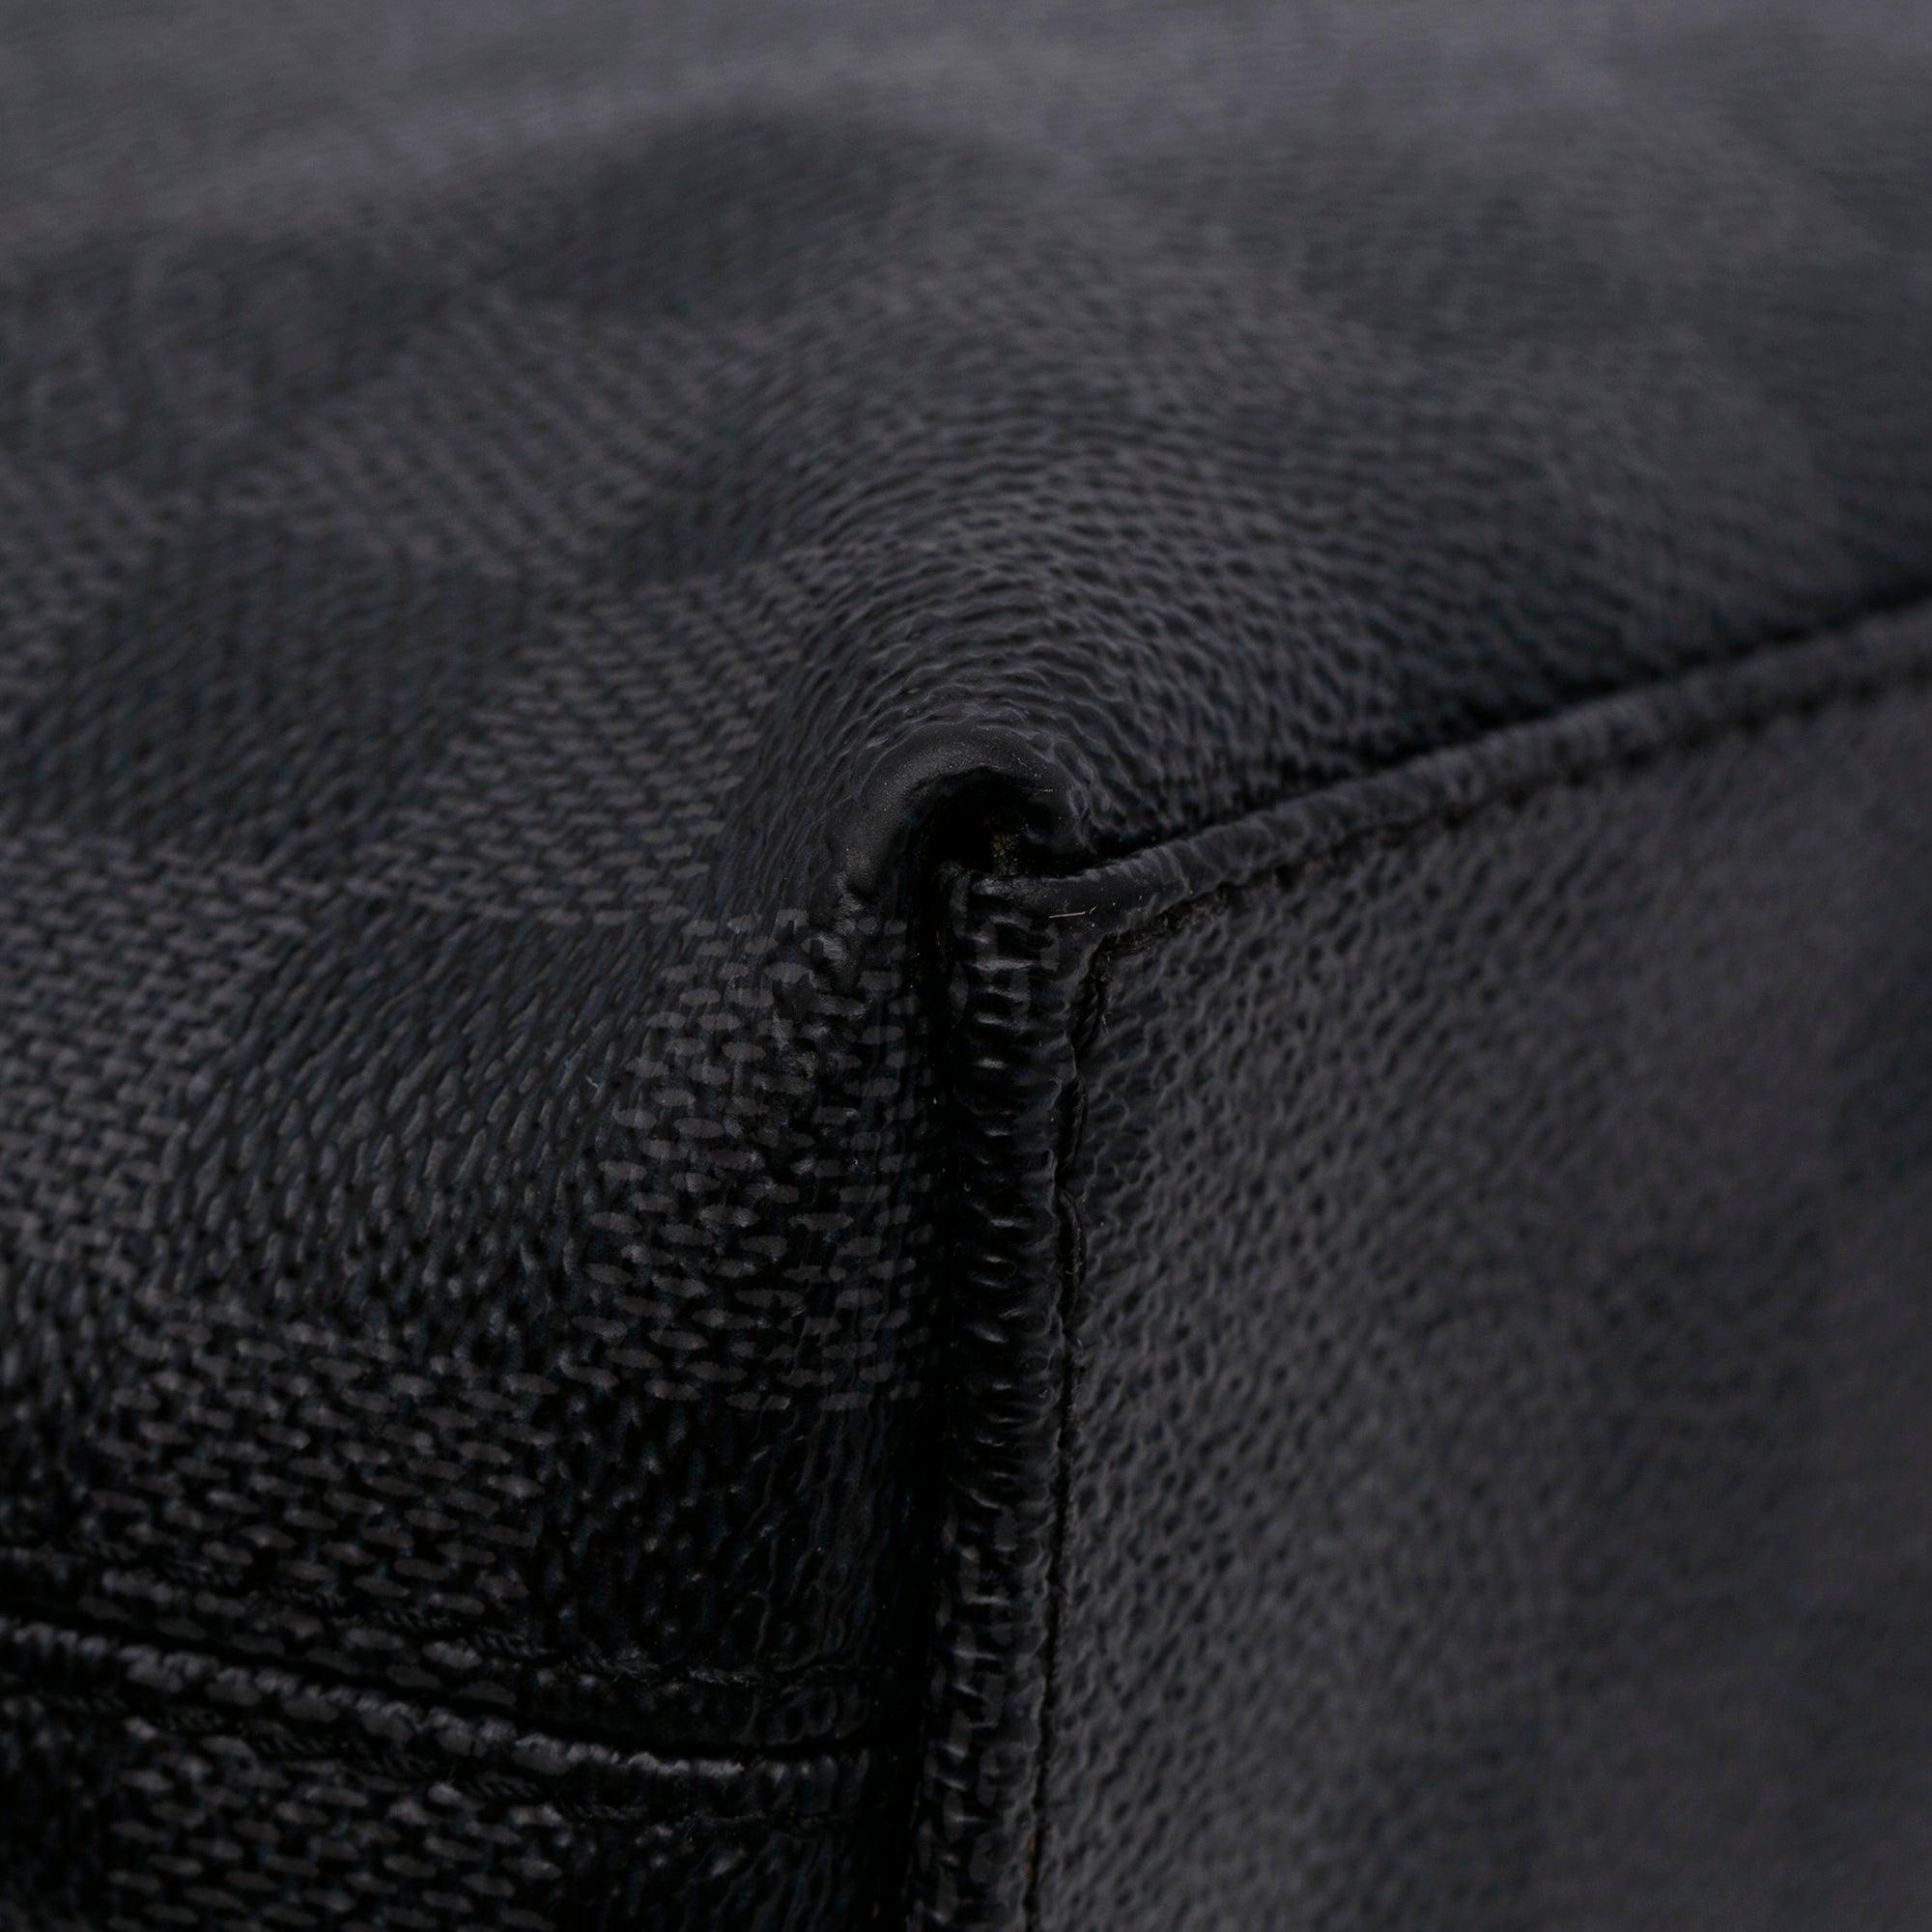 Louis Vuitton 2014 Pre-owned Poche-Documents Portfolio Clutch Bag